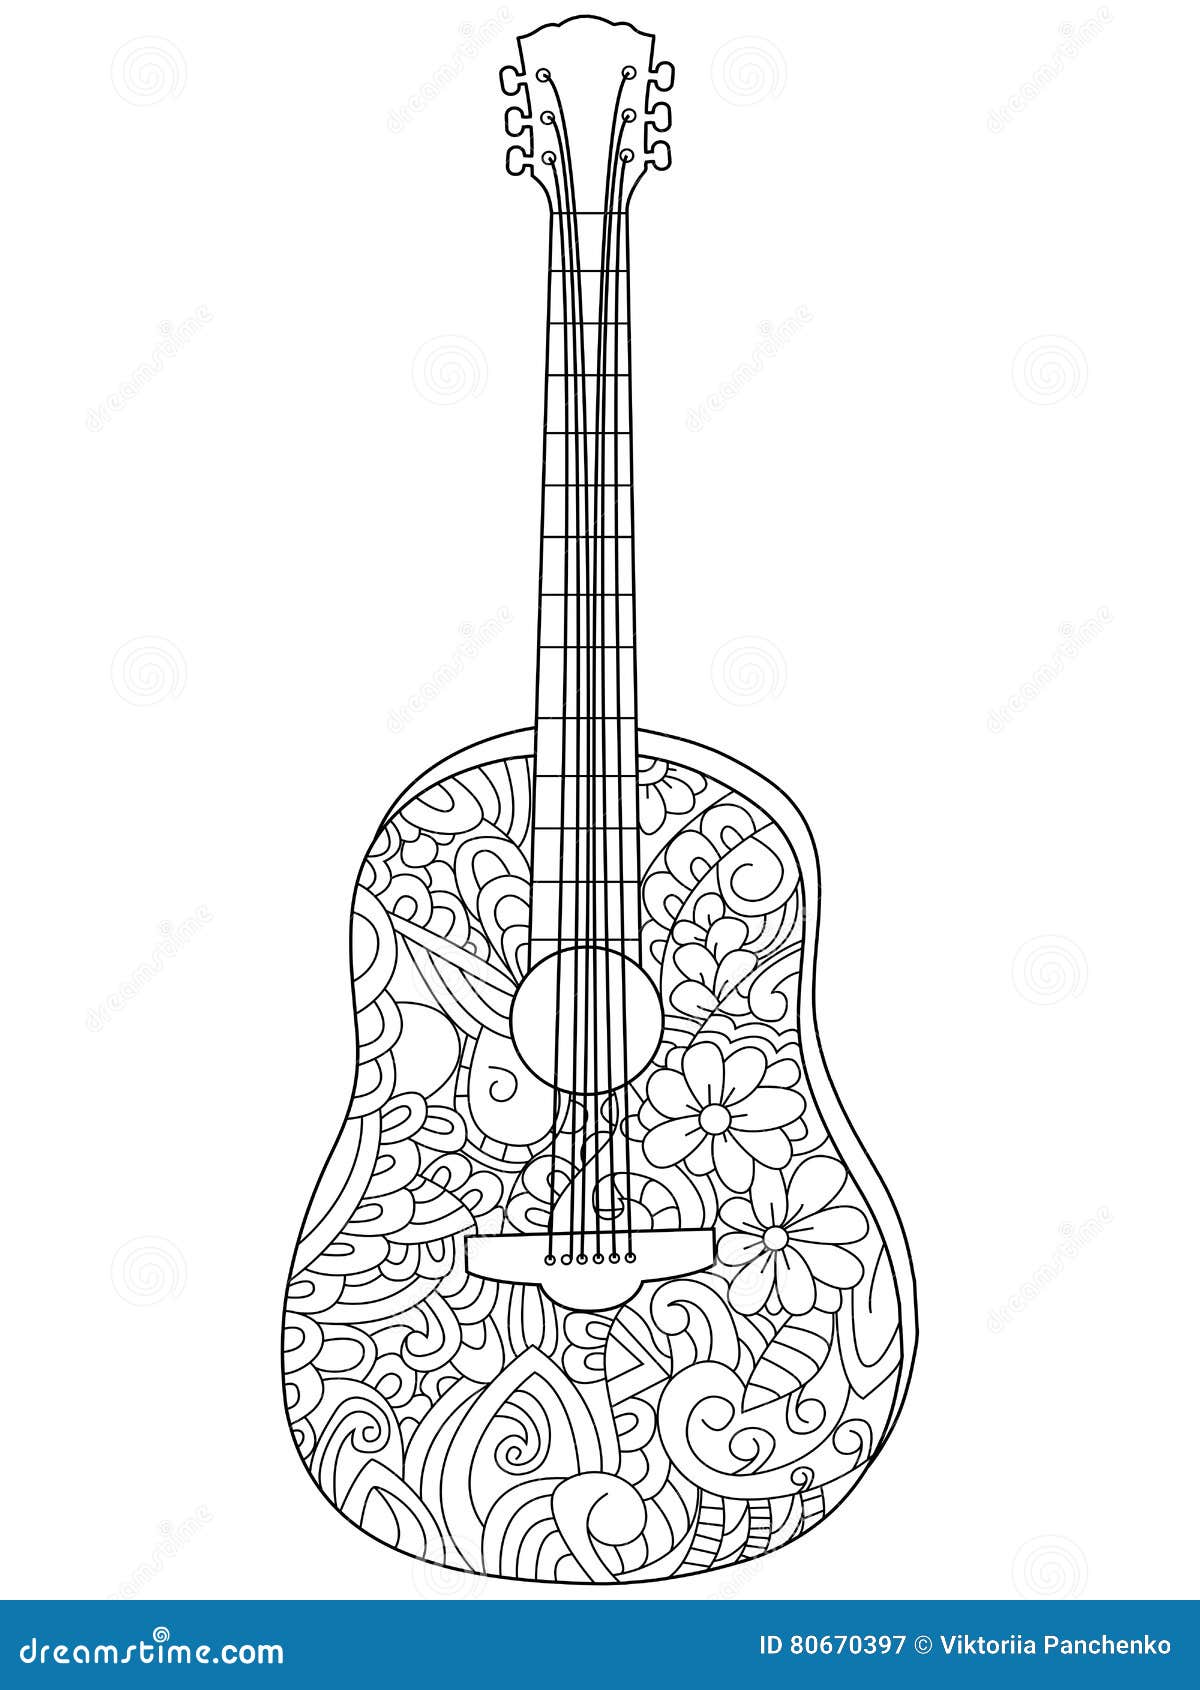 illustration stock vecteur de livre de coloriage de guitare d instrument de musique pour des adultes image